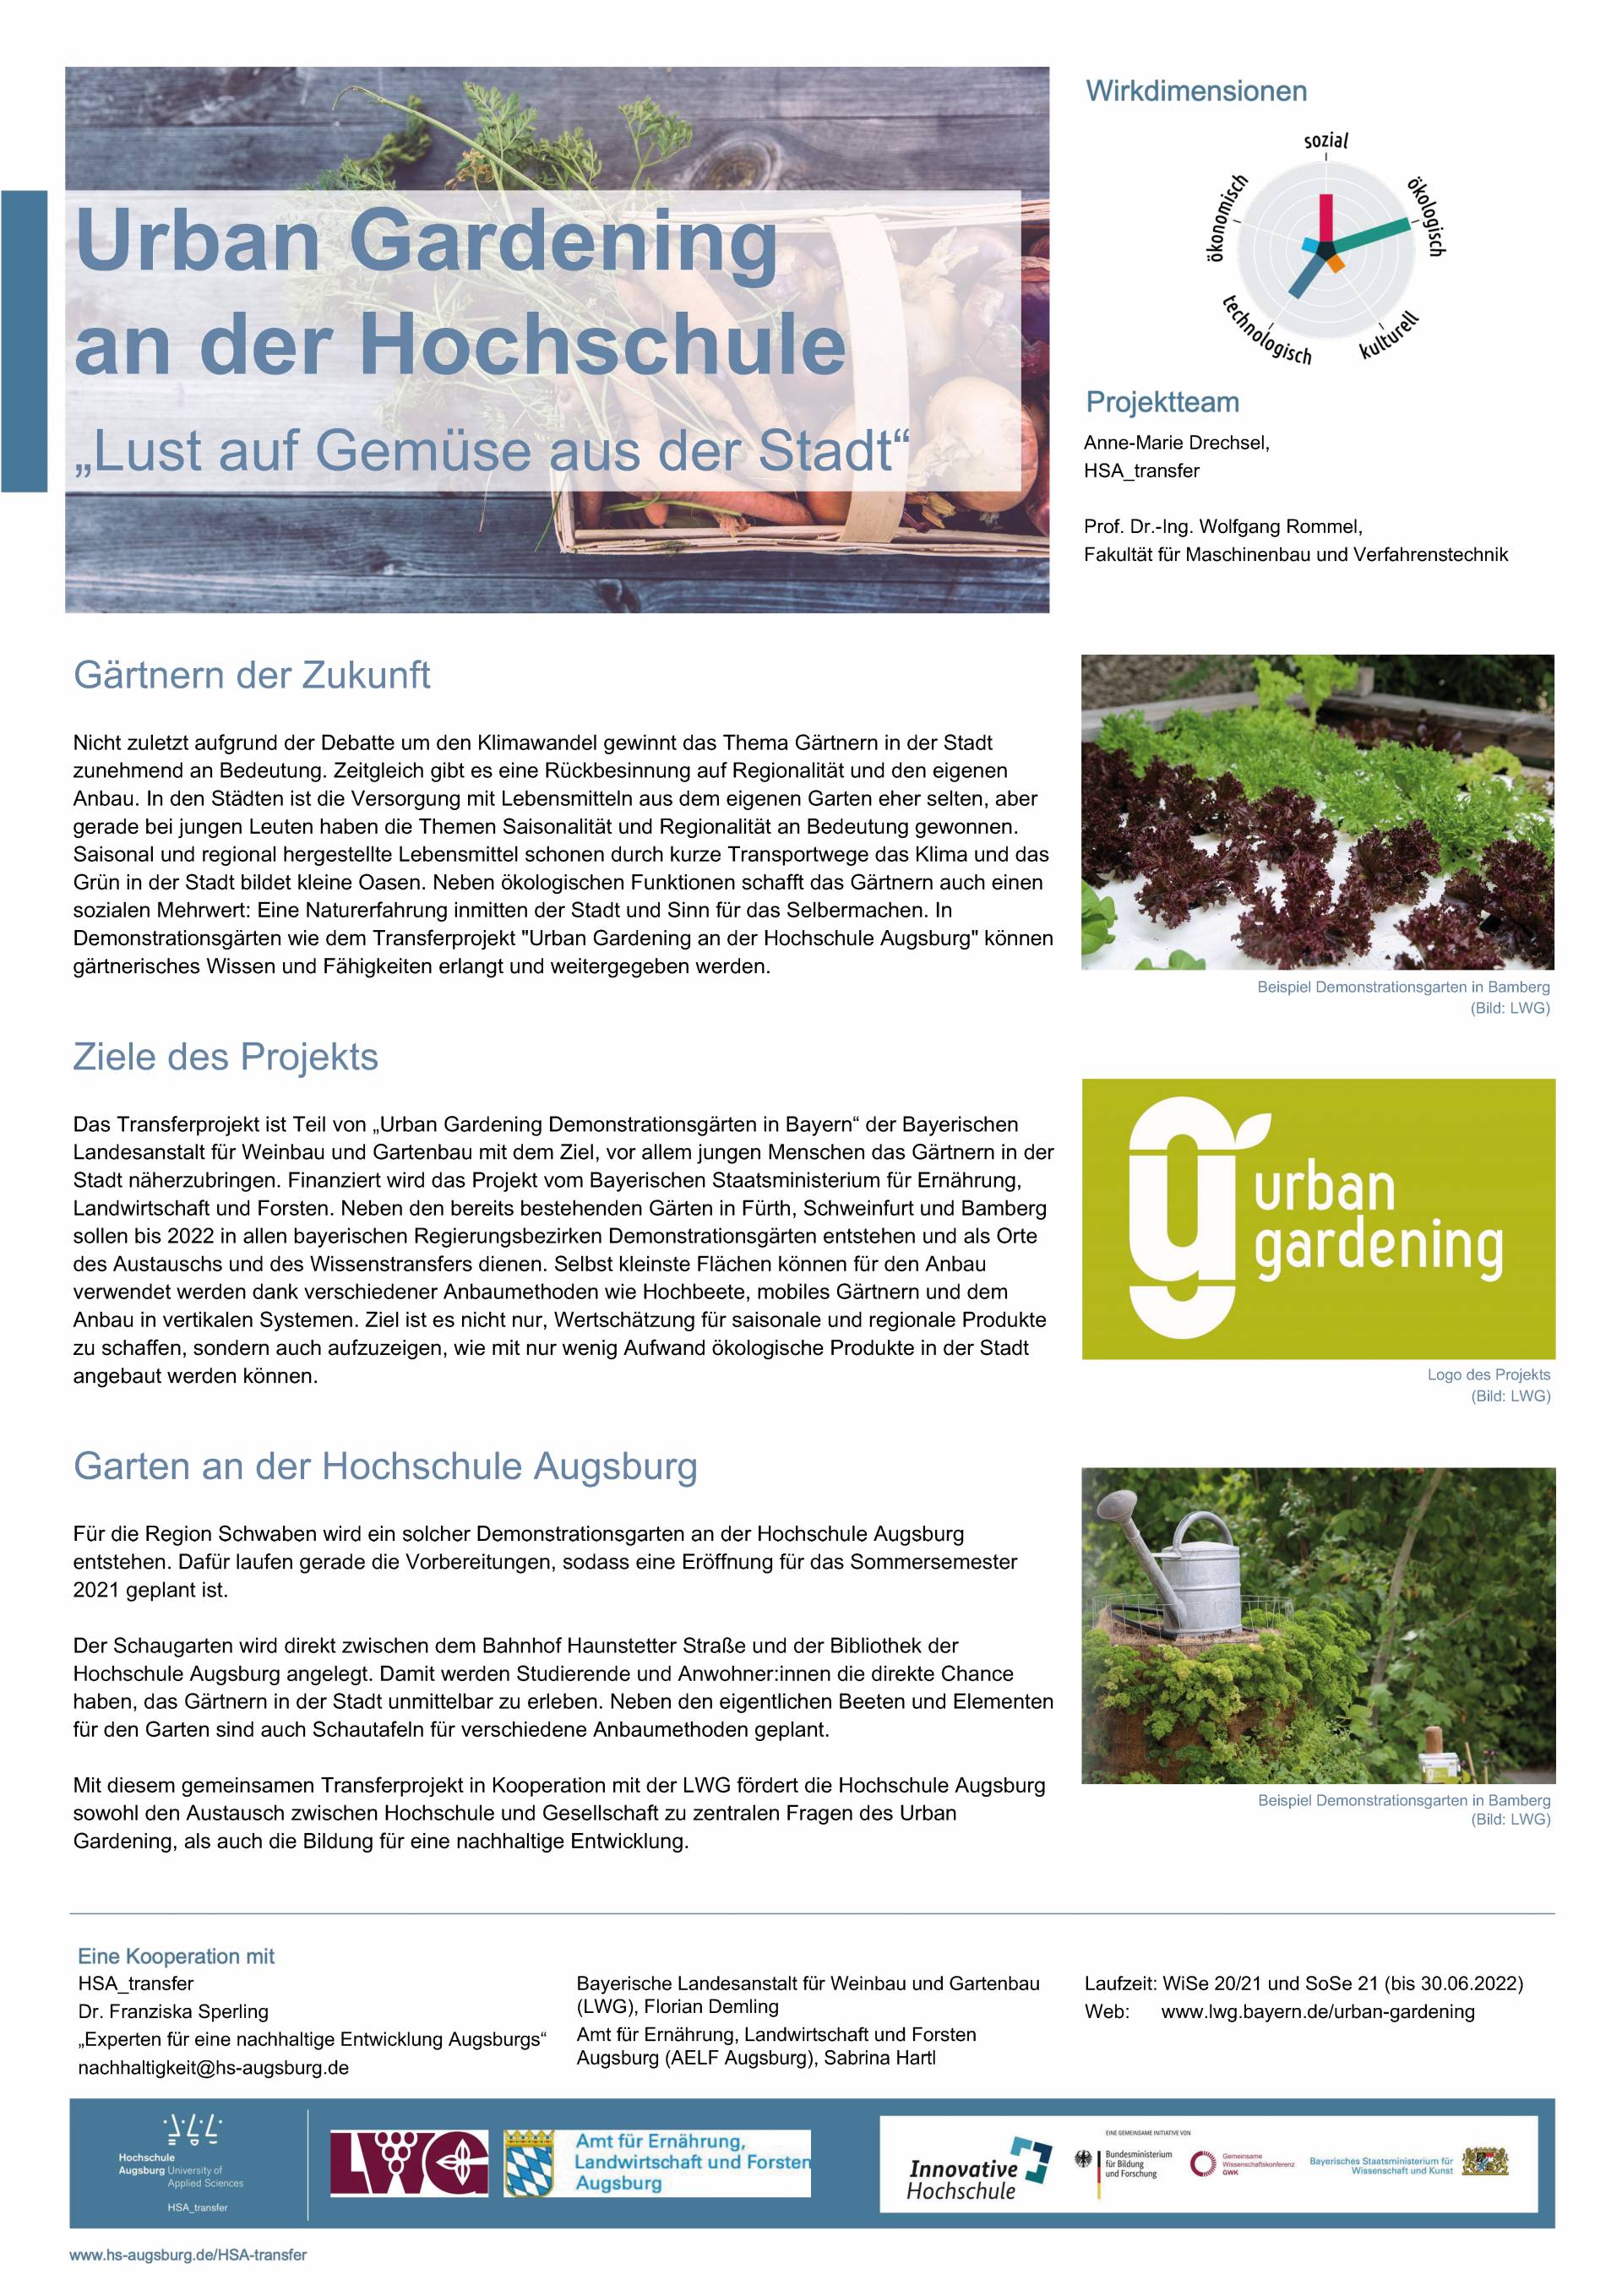 Urban Gardening an der Hochschule Augsburg - Poster I